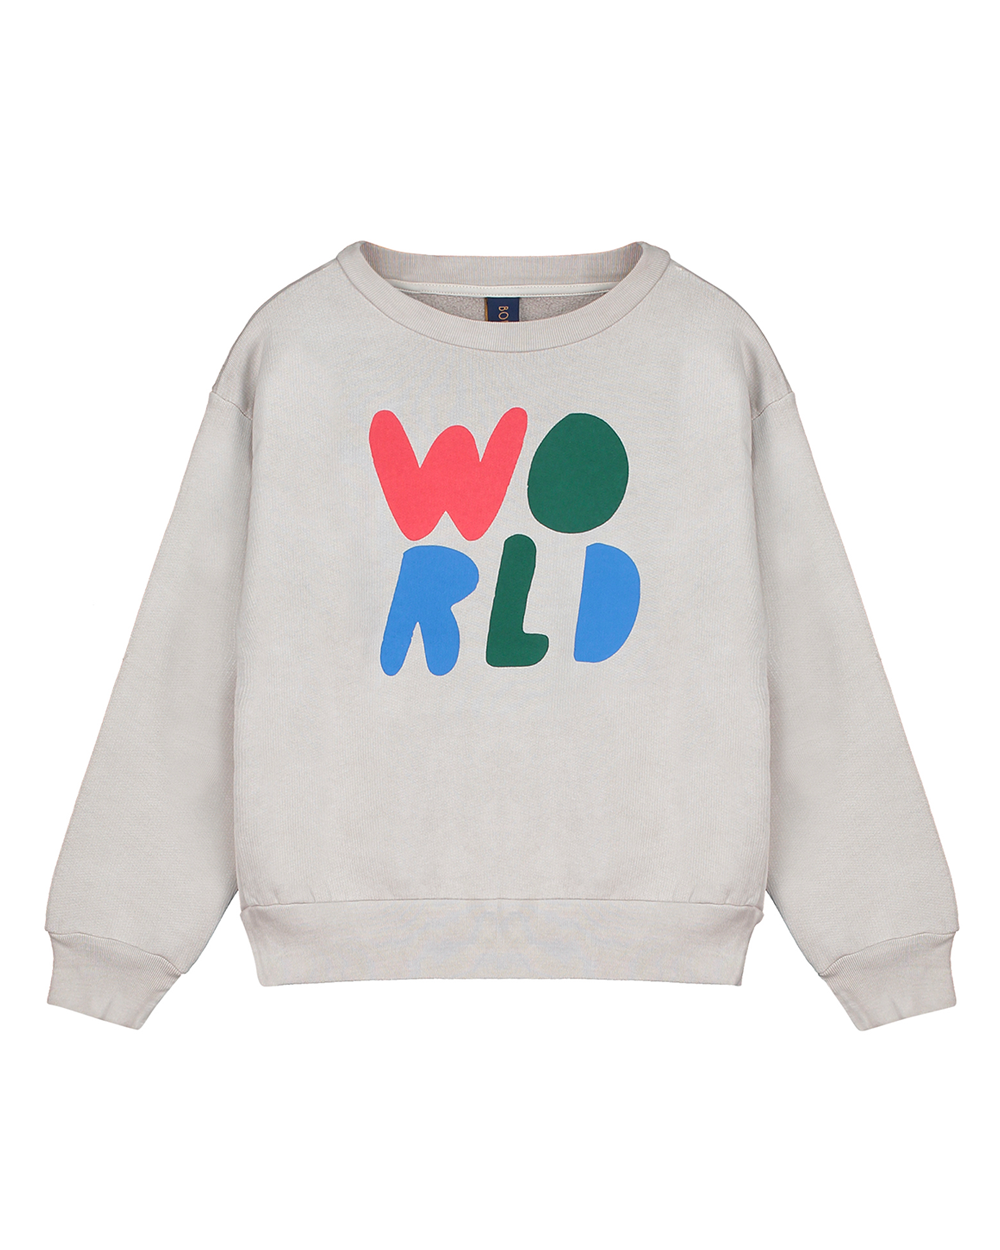 [BONMOT] Sweatshirt world colors [3-4Y, 4-5Y, 6-7Y, 10-11Y]